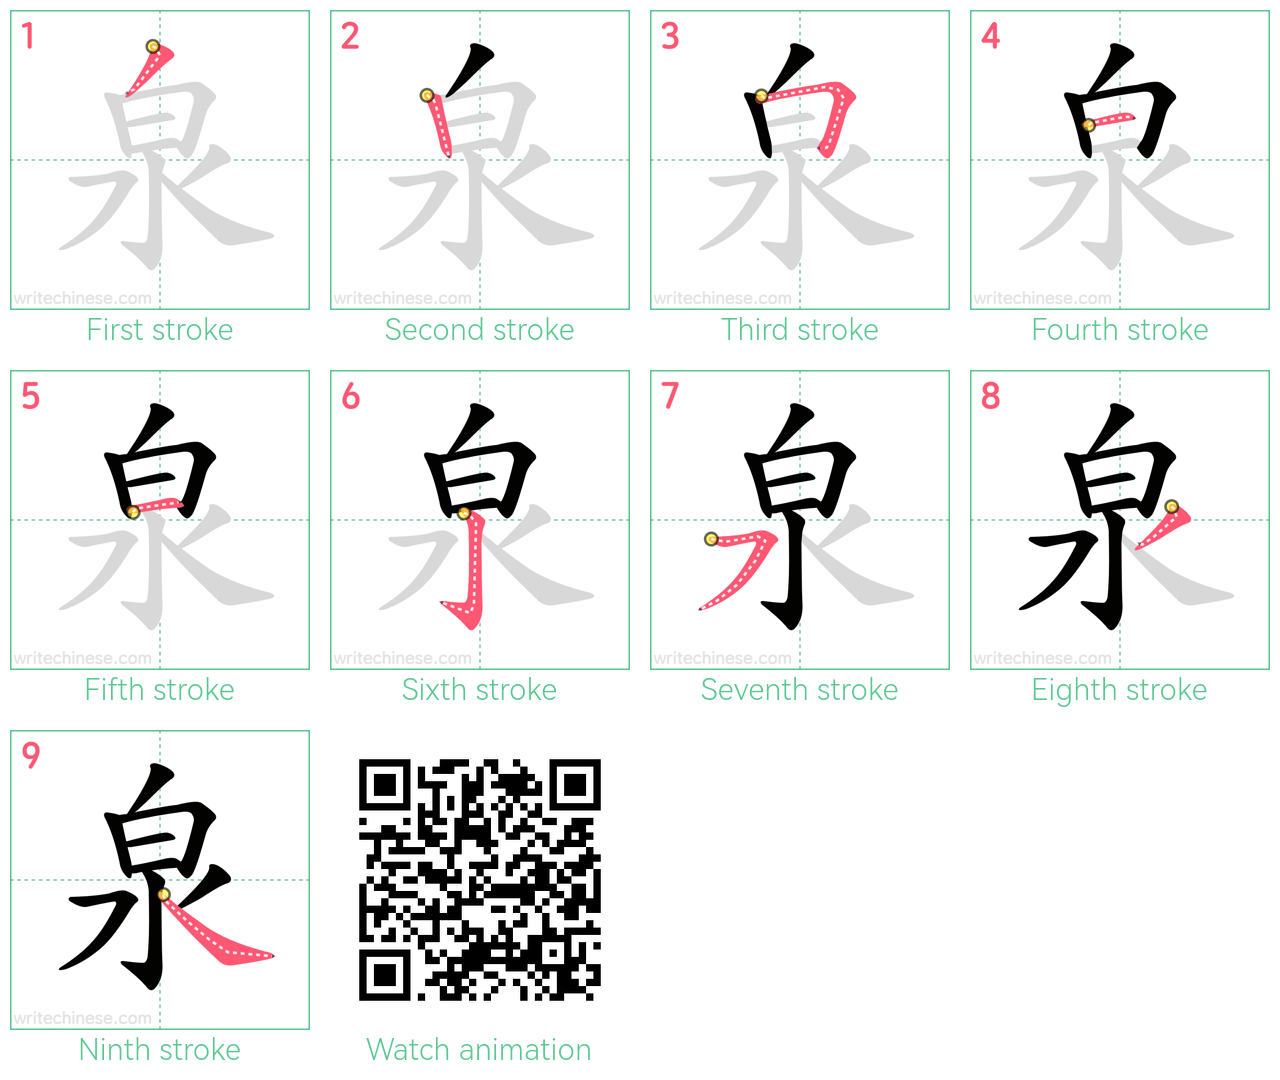 泉 step-by-step stroke order diagrams